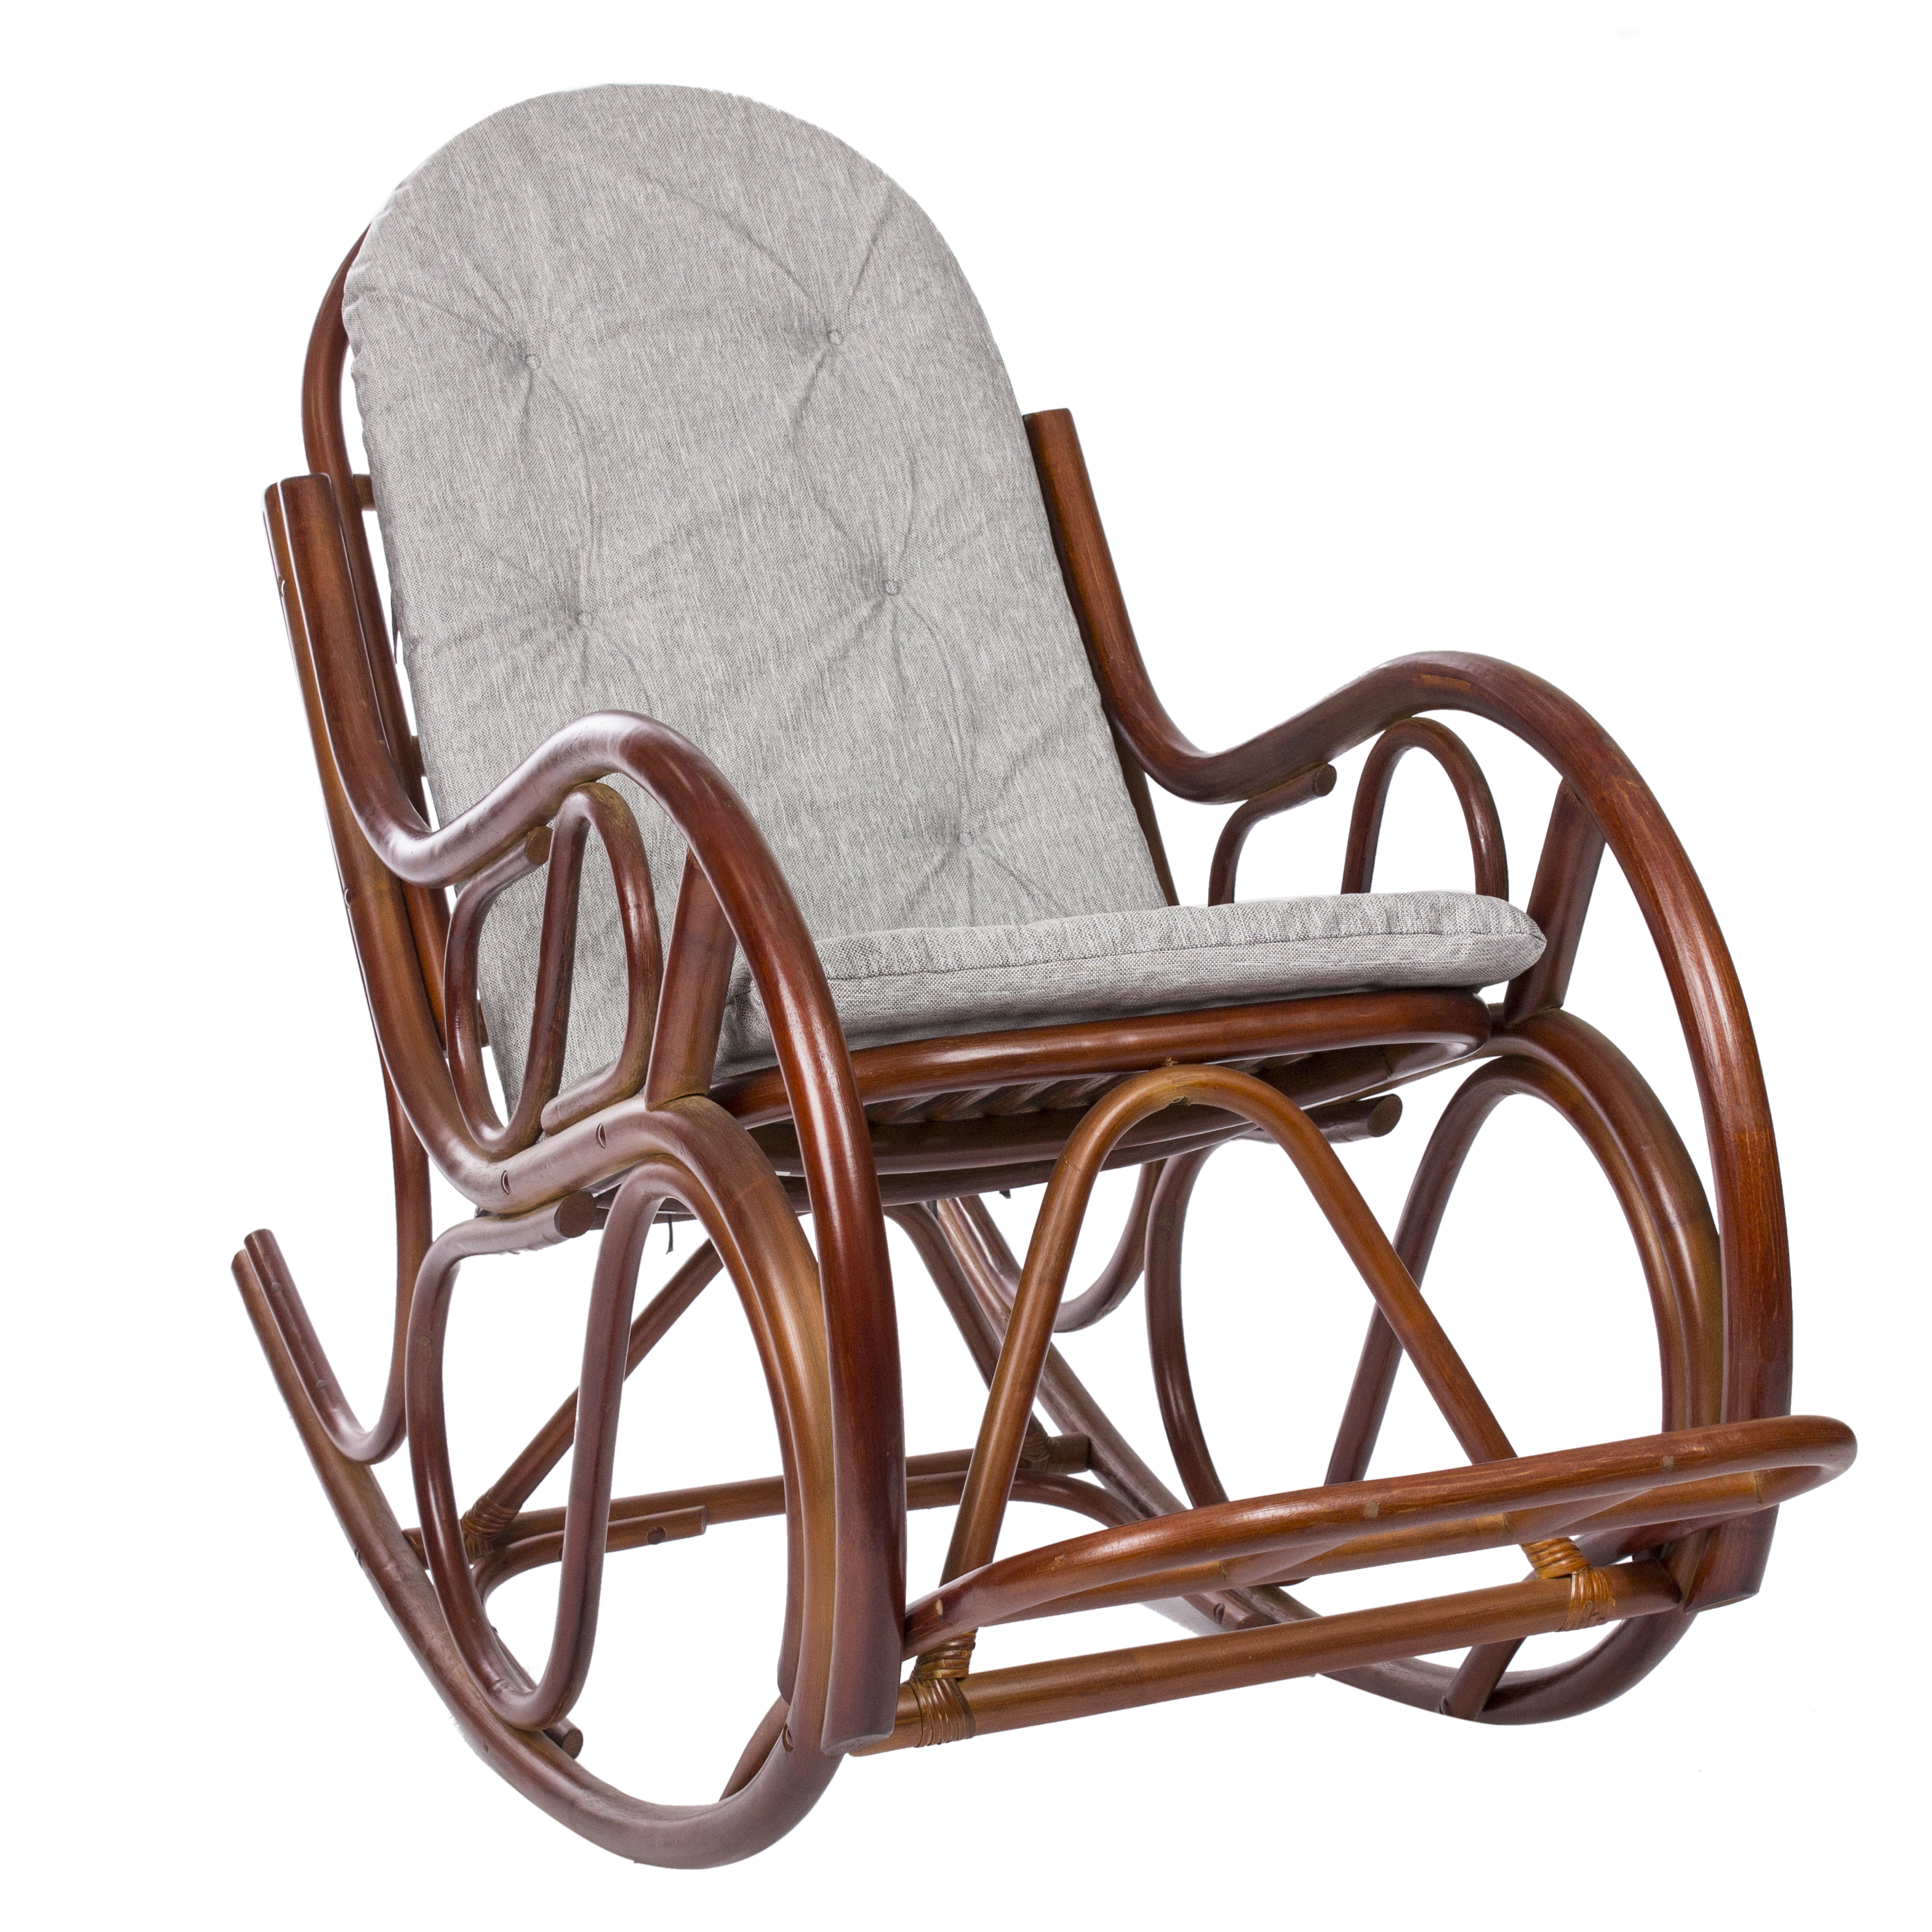 Недорогие кресла качалки от производителя. Mi-001 кресло-качалка Classic, с подушкой. Кресло-качалка с подушкой tg0195c. Кресло качалка Rona Rotang. Кресло-качалка Swivel Rocker с подушкой.